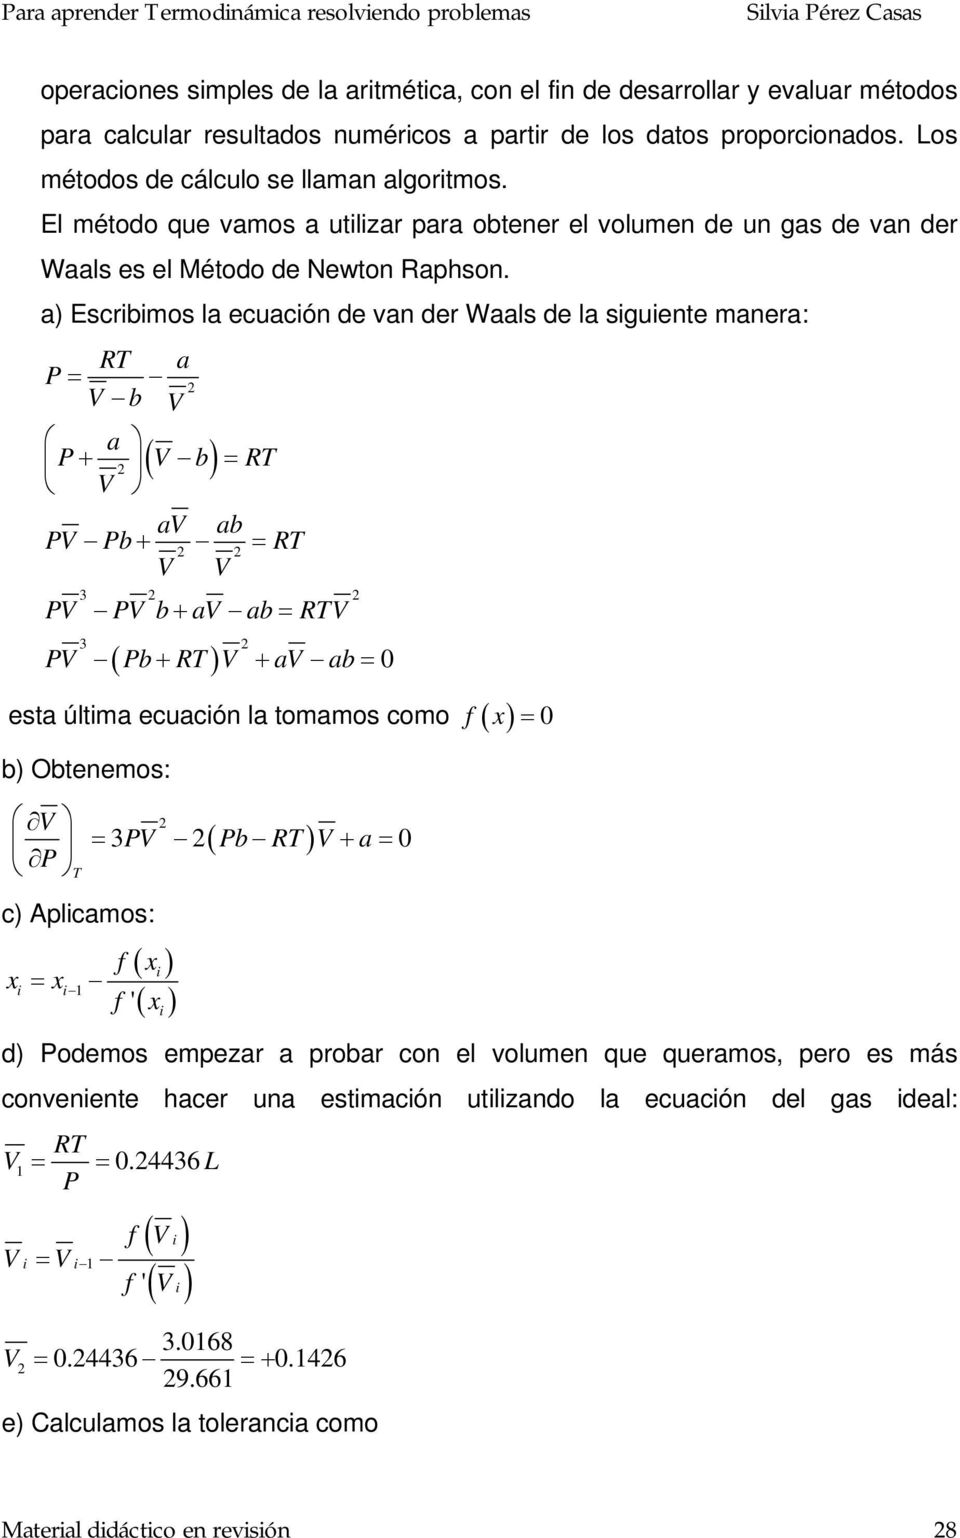 a) Esibimos la euaión de van de Waals de la siguiente manea: RT a = b a + ( b) = RT a ab b + = RT b + a ab = RT ( ) b + RT + a ab = 0 esta última euaión la tomamos omo f ( x ) = 0 b) Obtenemos: T )